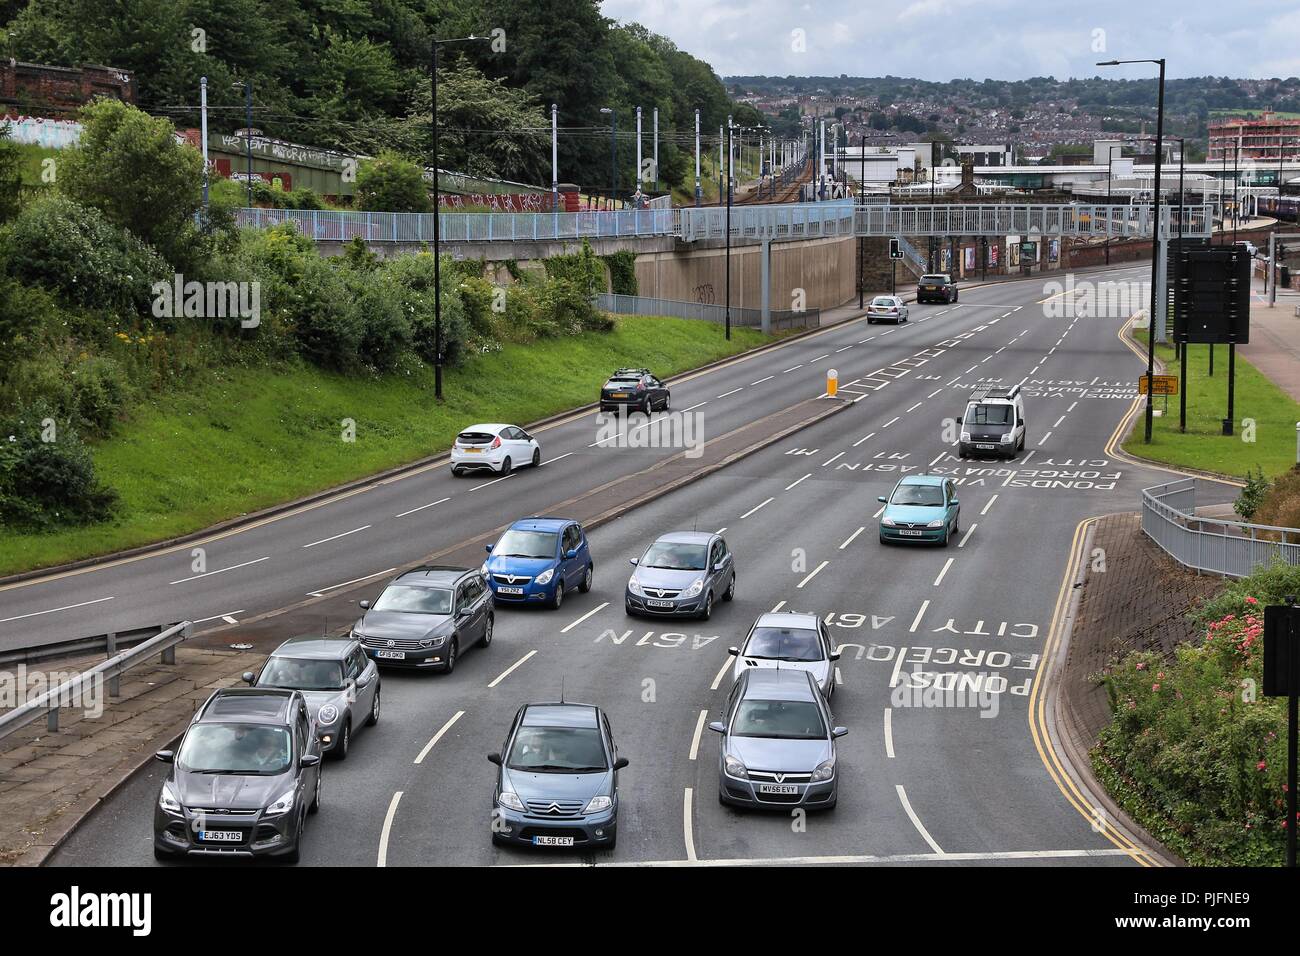 SHEFFIELD, Großbritannien - 10 JULI 2016: Leute fahren auf einer mehrspurigen Straße in Sheffield, Großbritannien. Großbritannien hat 519 Fahrzeuge pro 1000 Einwohner. Stockfoto